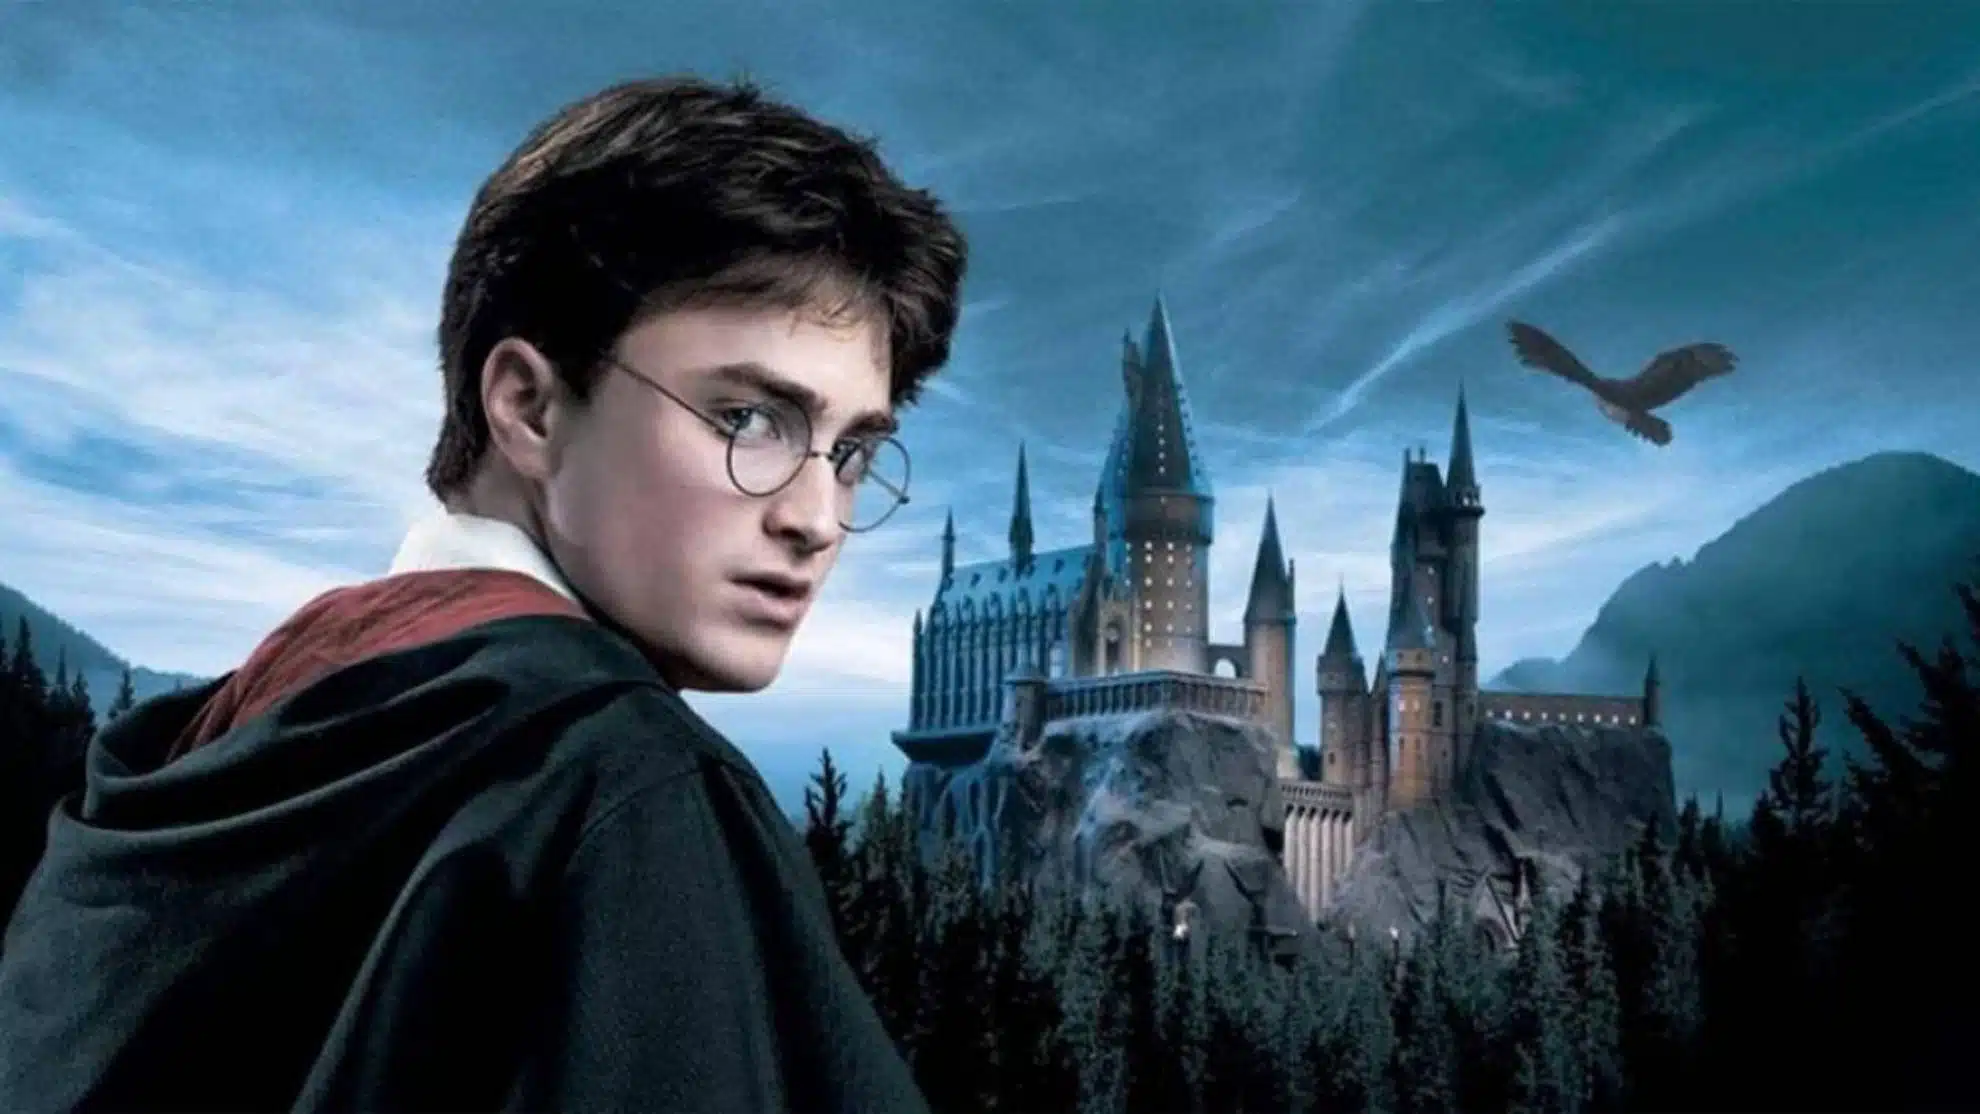 Daniel Radcliffe como el personaje Harry Potter en el lado izquierdo de la imagen